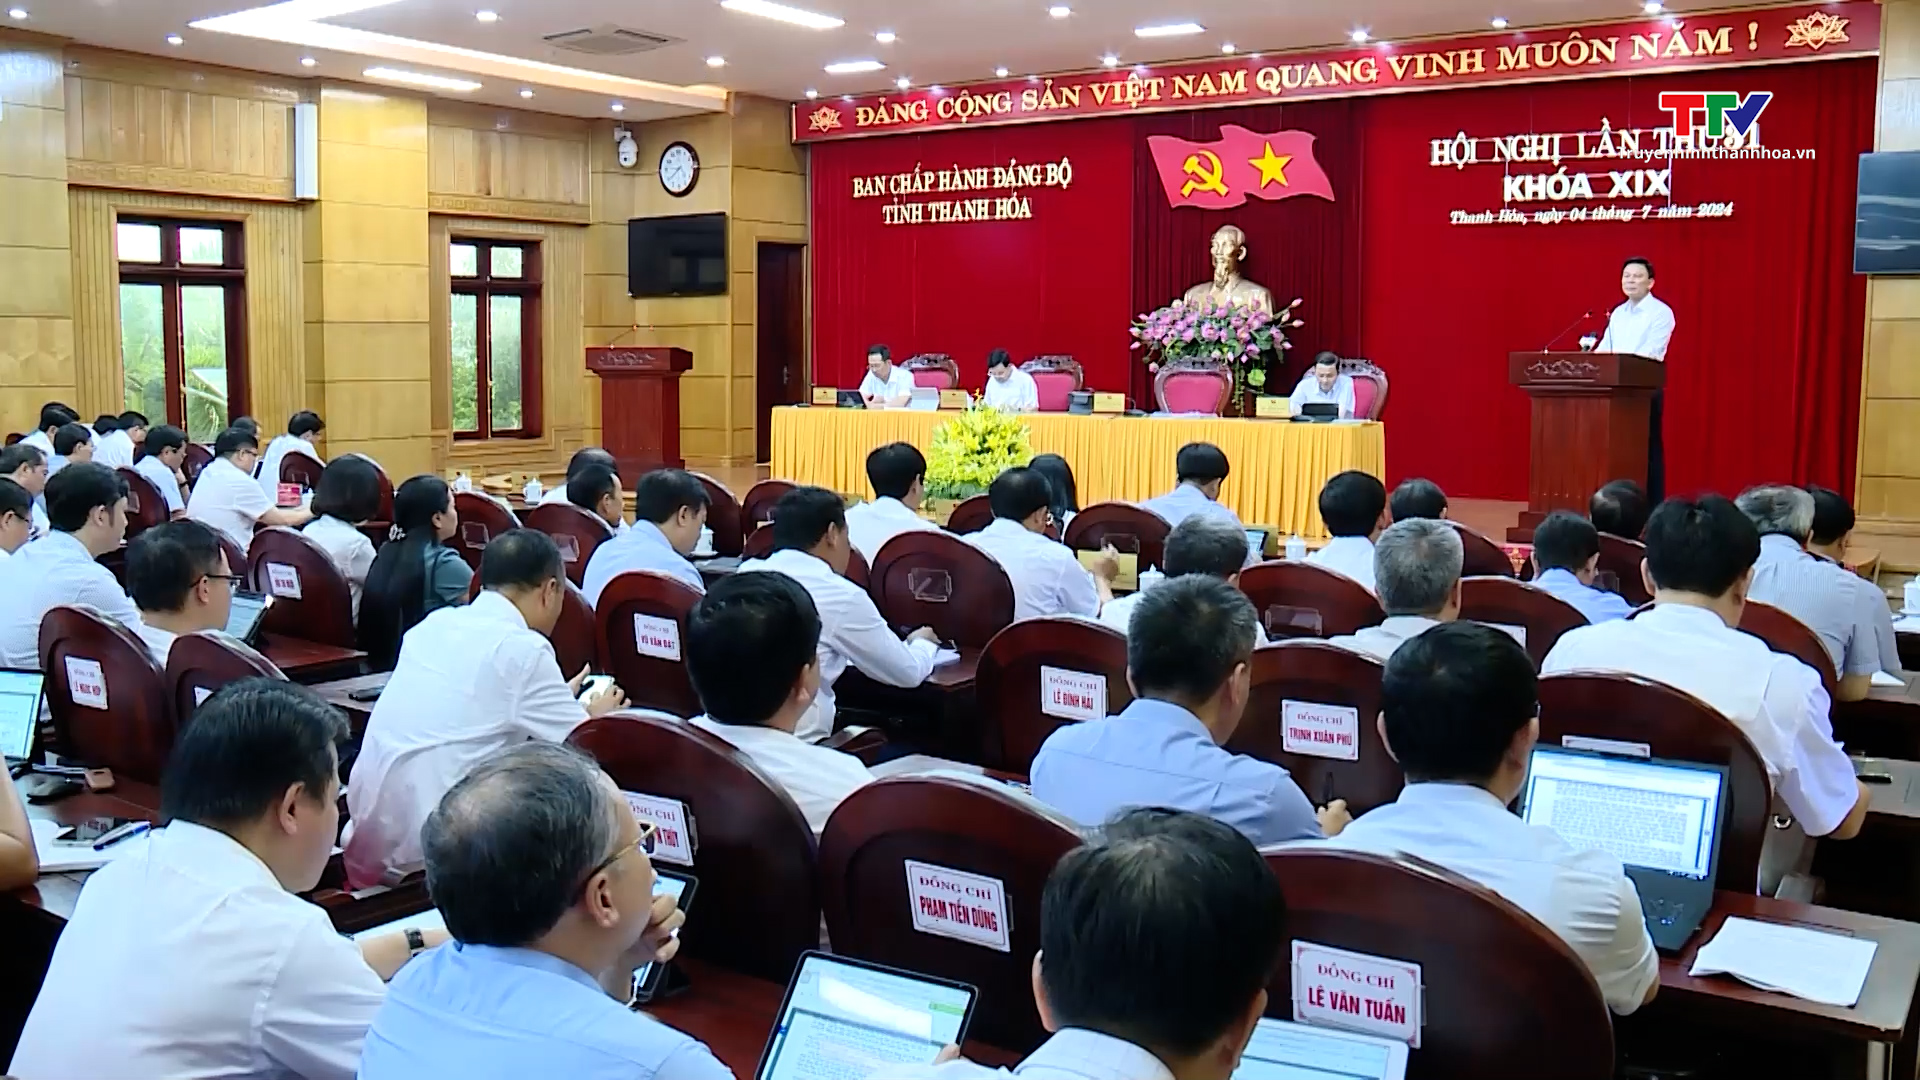 Hội nghị lần thứ 31 Ban Chấp hành Đảng bộ tỉnh Thanh Hoá- Ảnh 5.